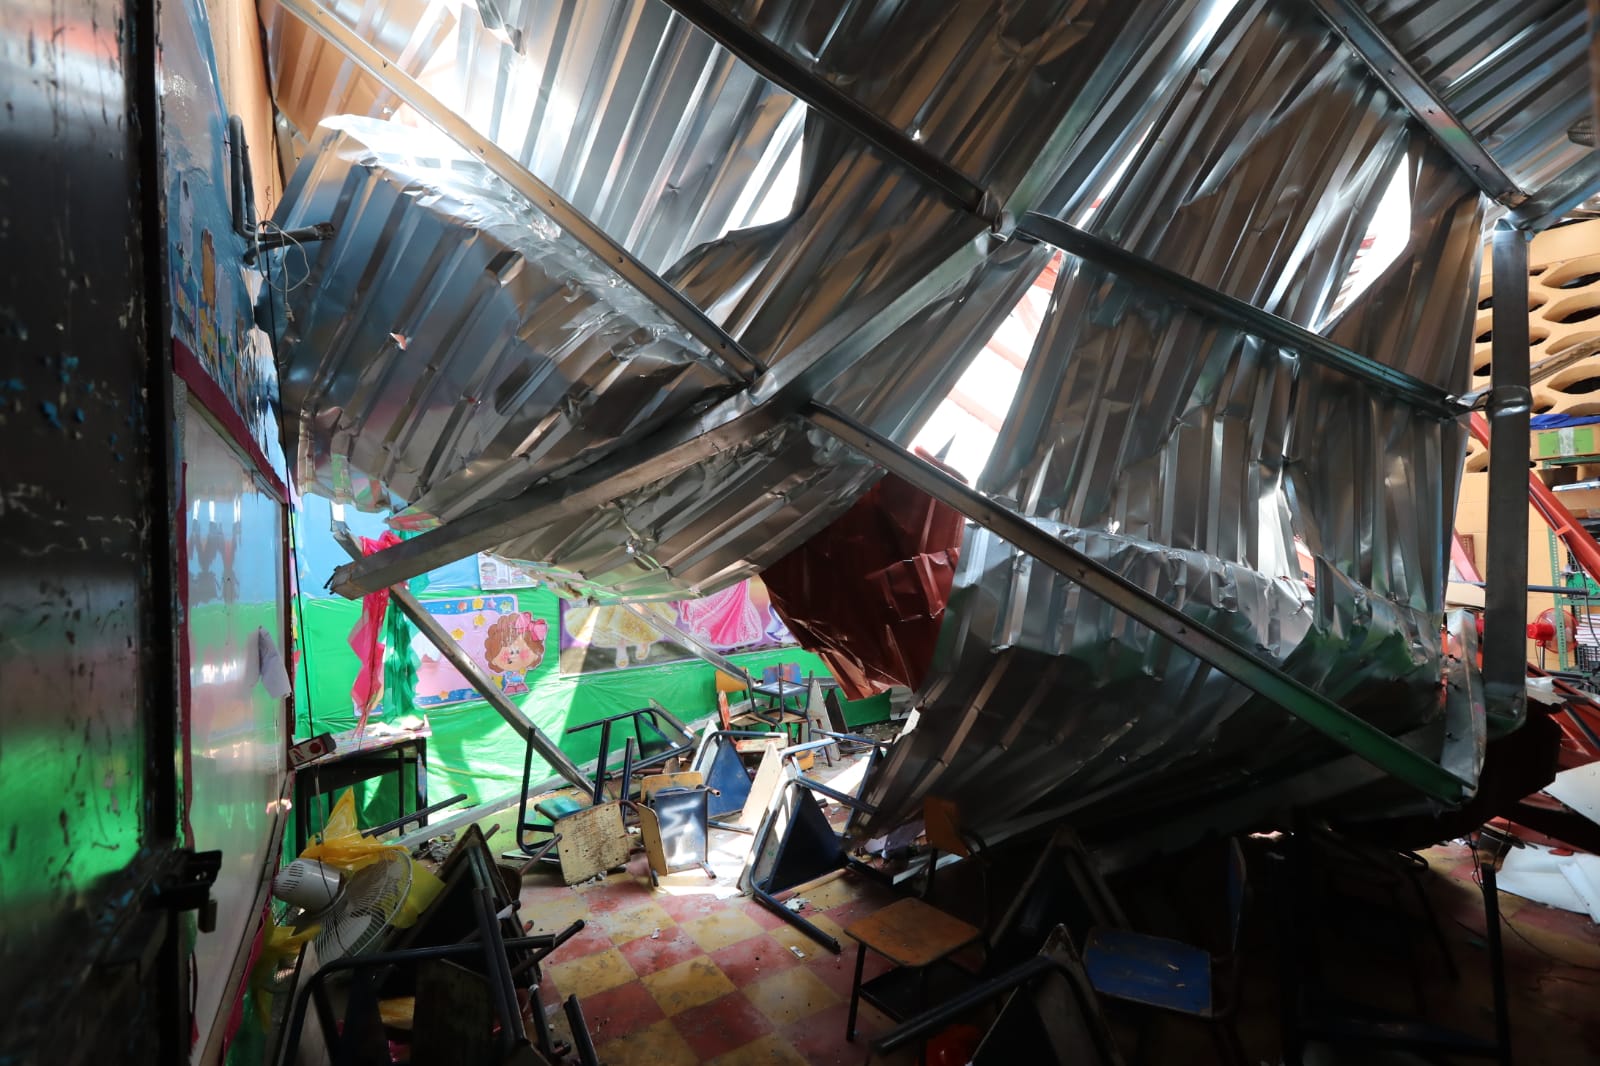 Una estructura de costaneras y láminas que se desprendió de un edificio cayó sobre el techo de tres aulas de la Escuela Oficial Urbana de Niñas No. 1 Juan Manuel Aguirre, de Chiquimula. (Foto Prensa Libre: Élmer Vargas)